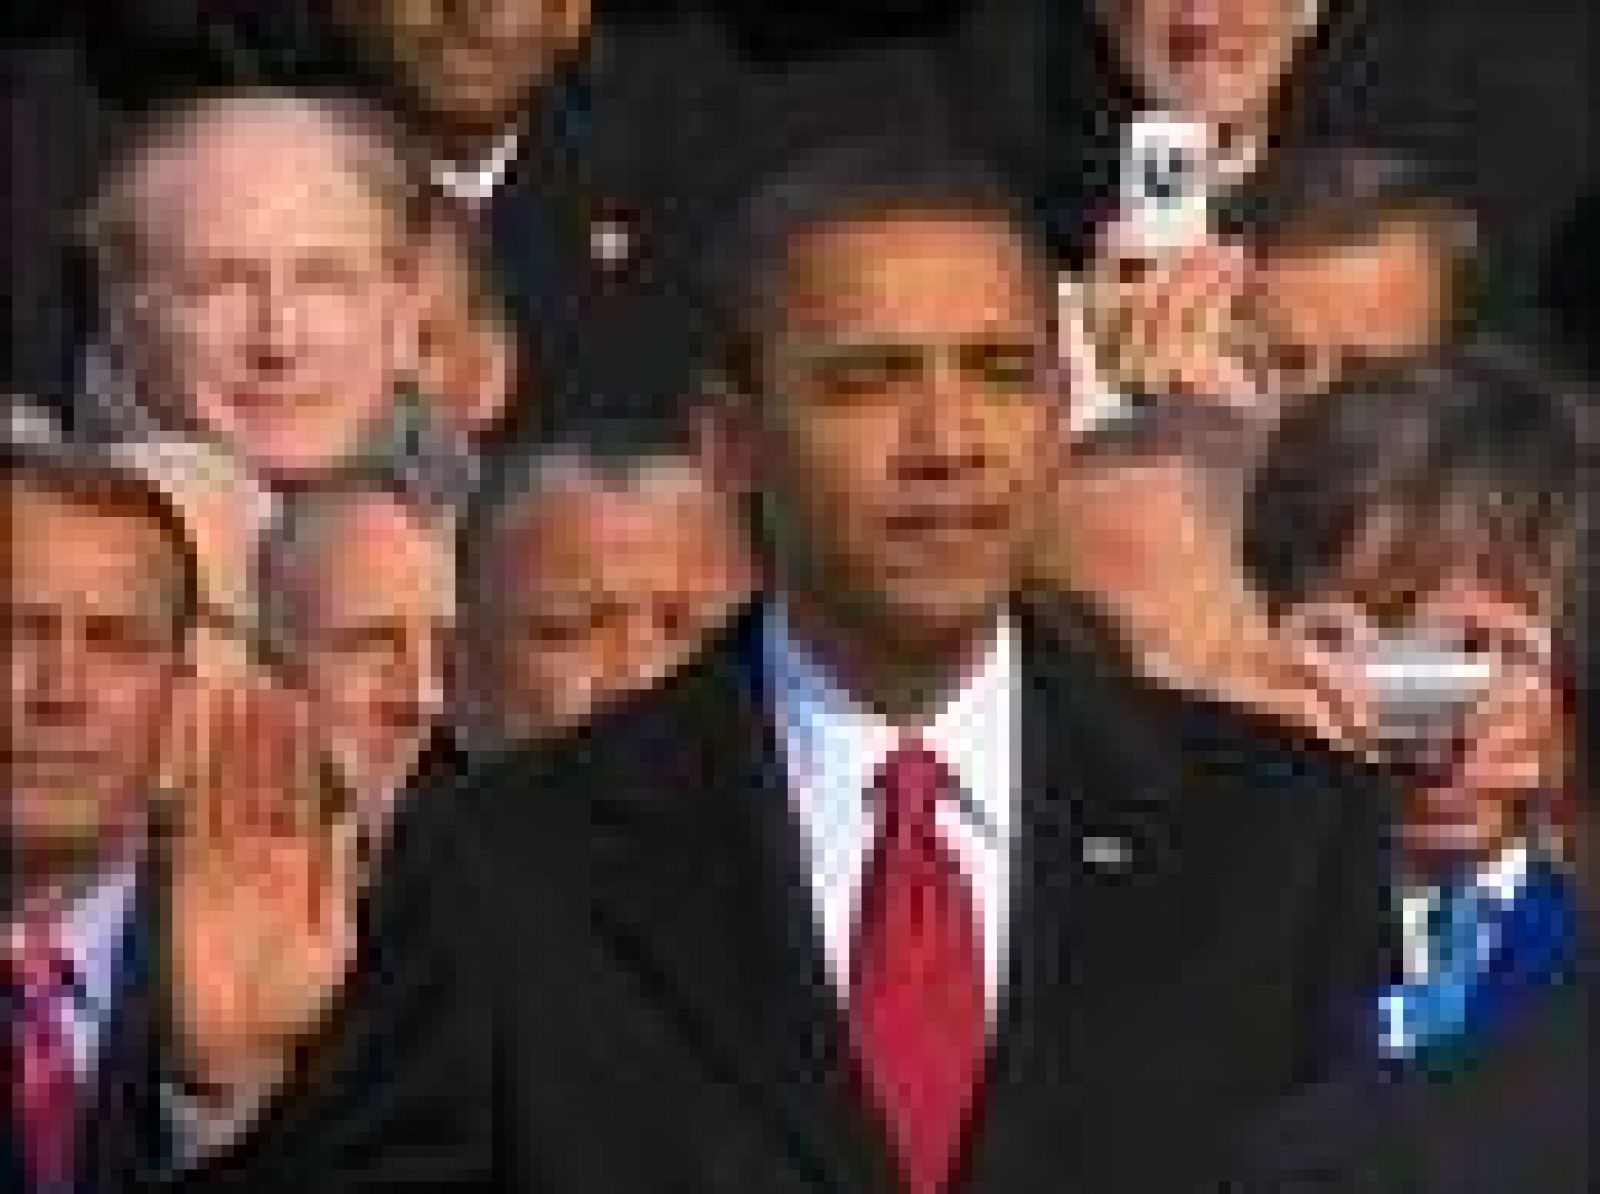 Hoy, 20 de enero de 2009, será un día que pasará a la historia. Barack Obama se ha convertido en el primer presidente negro de EE.UU.